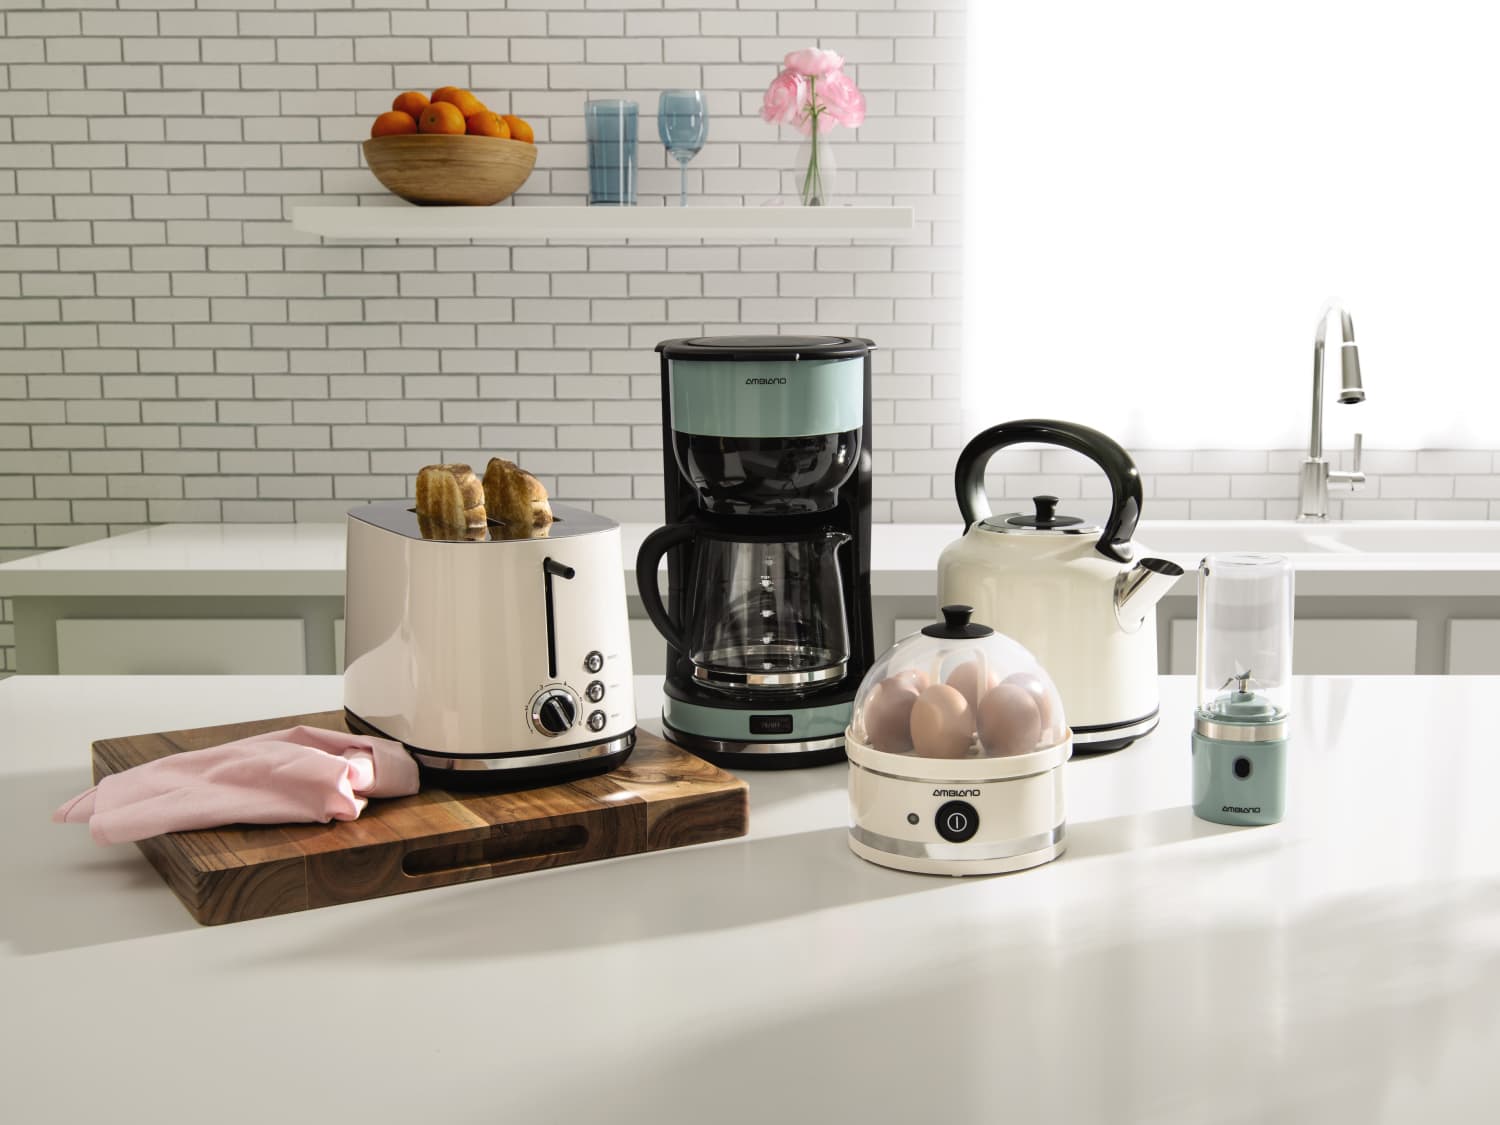 ALDI Has Released a Line of Retro Kitchen Appliances